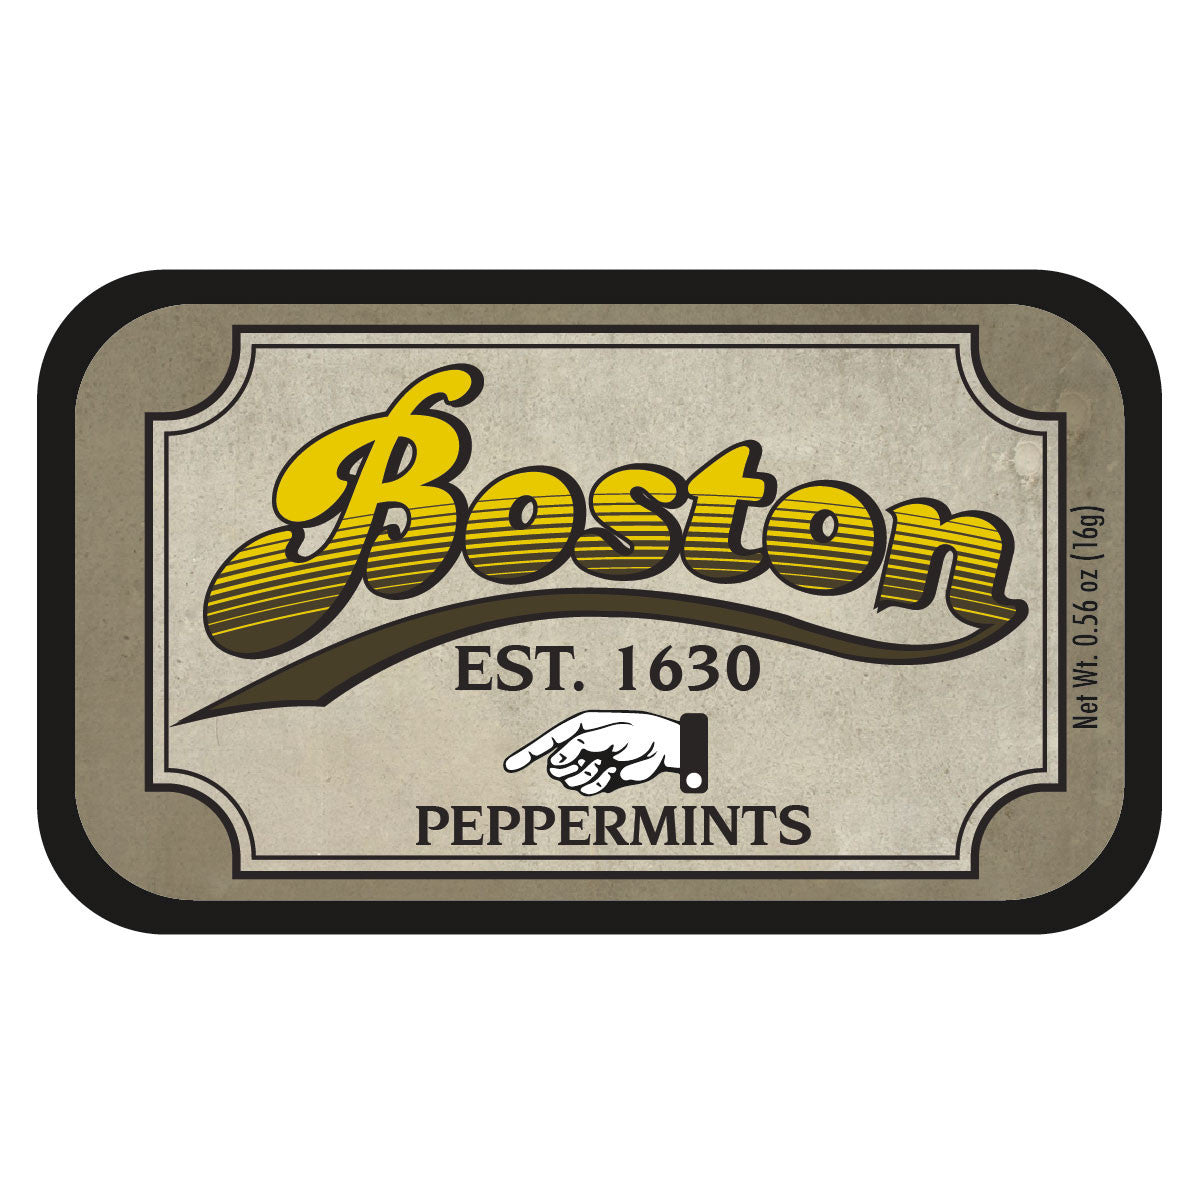 Boston Est. 1630 - 0422S